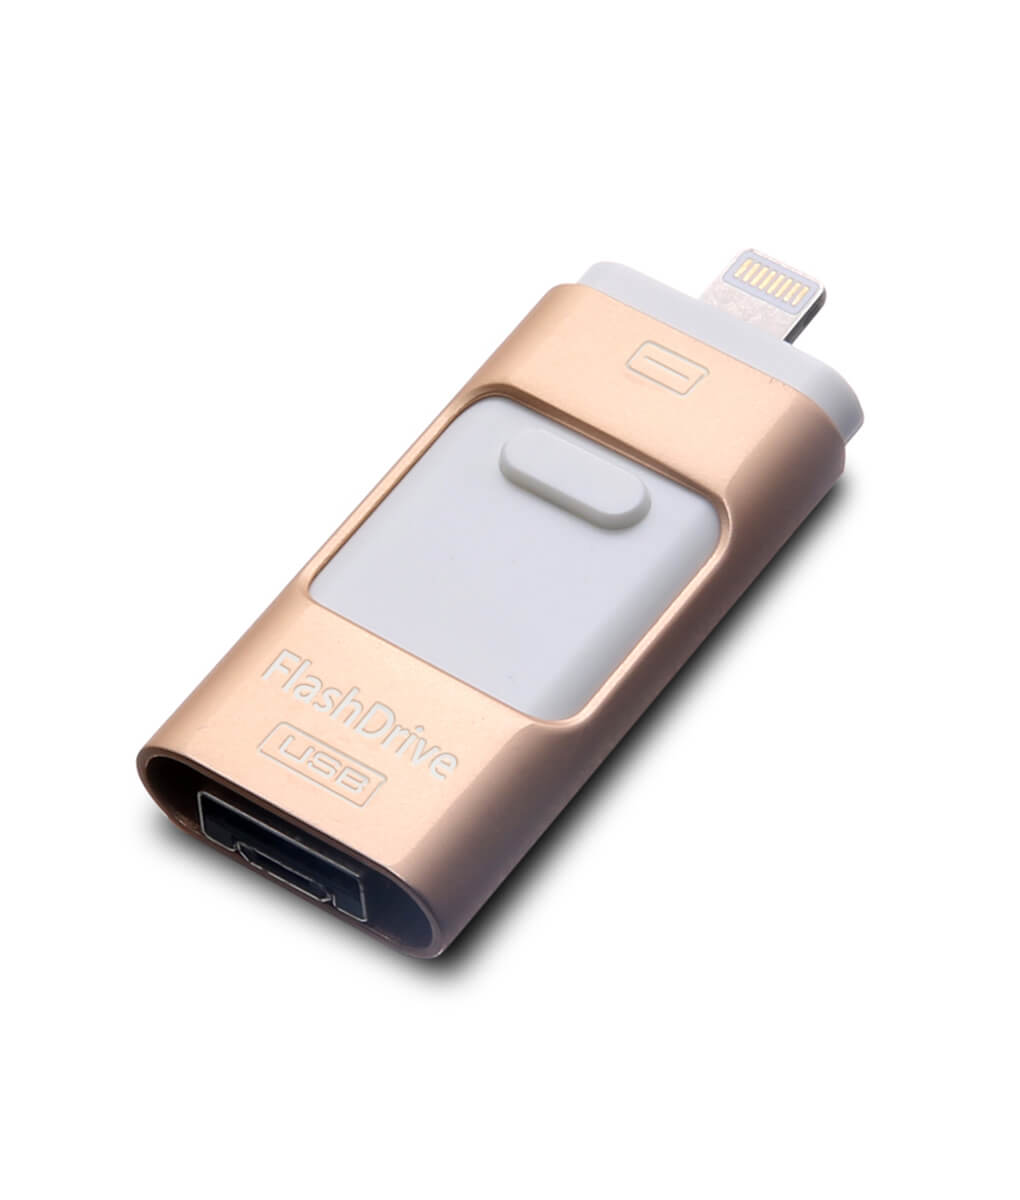 Clé USB Flash iOS pour iPhone et iPad - Non vendue en magasin